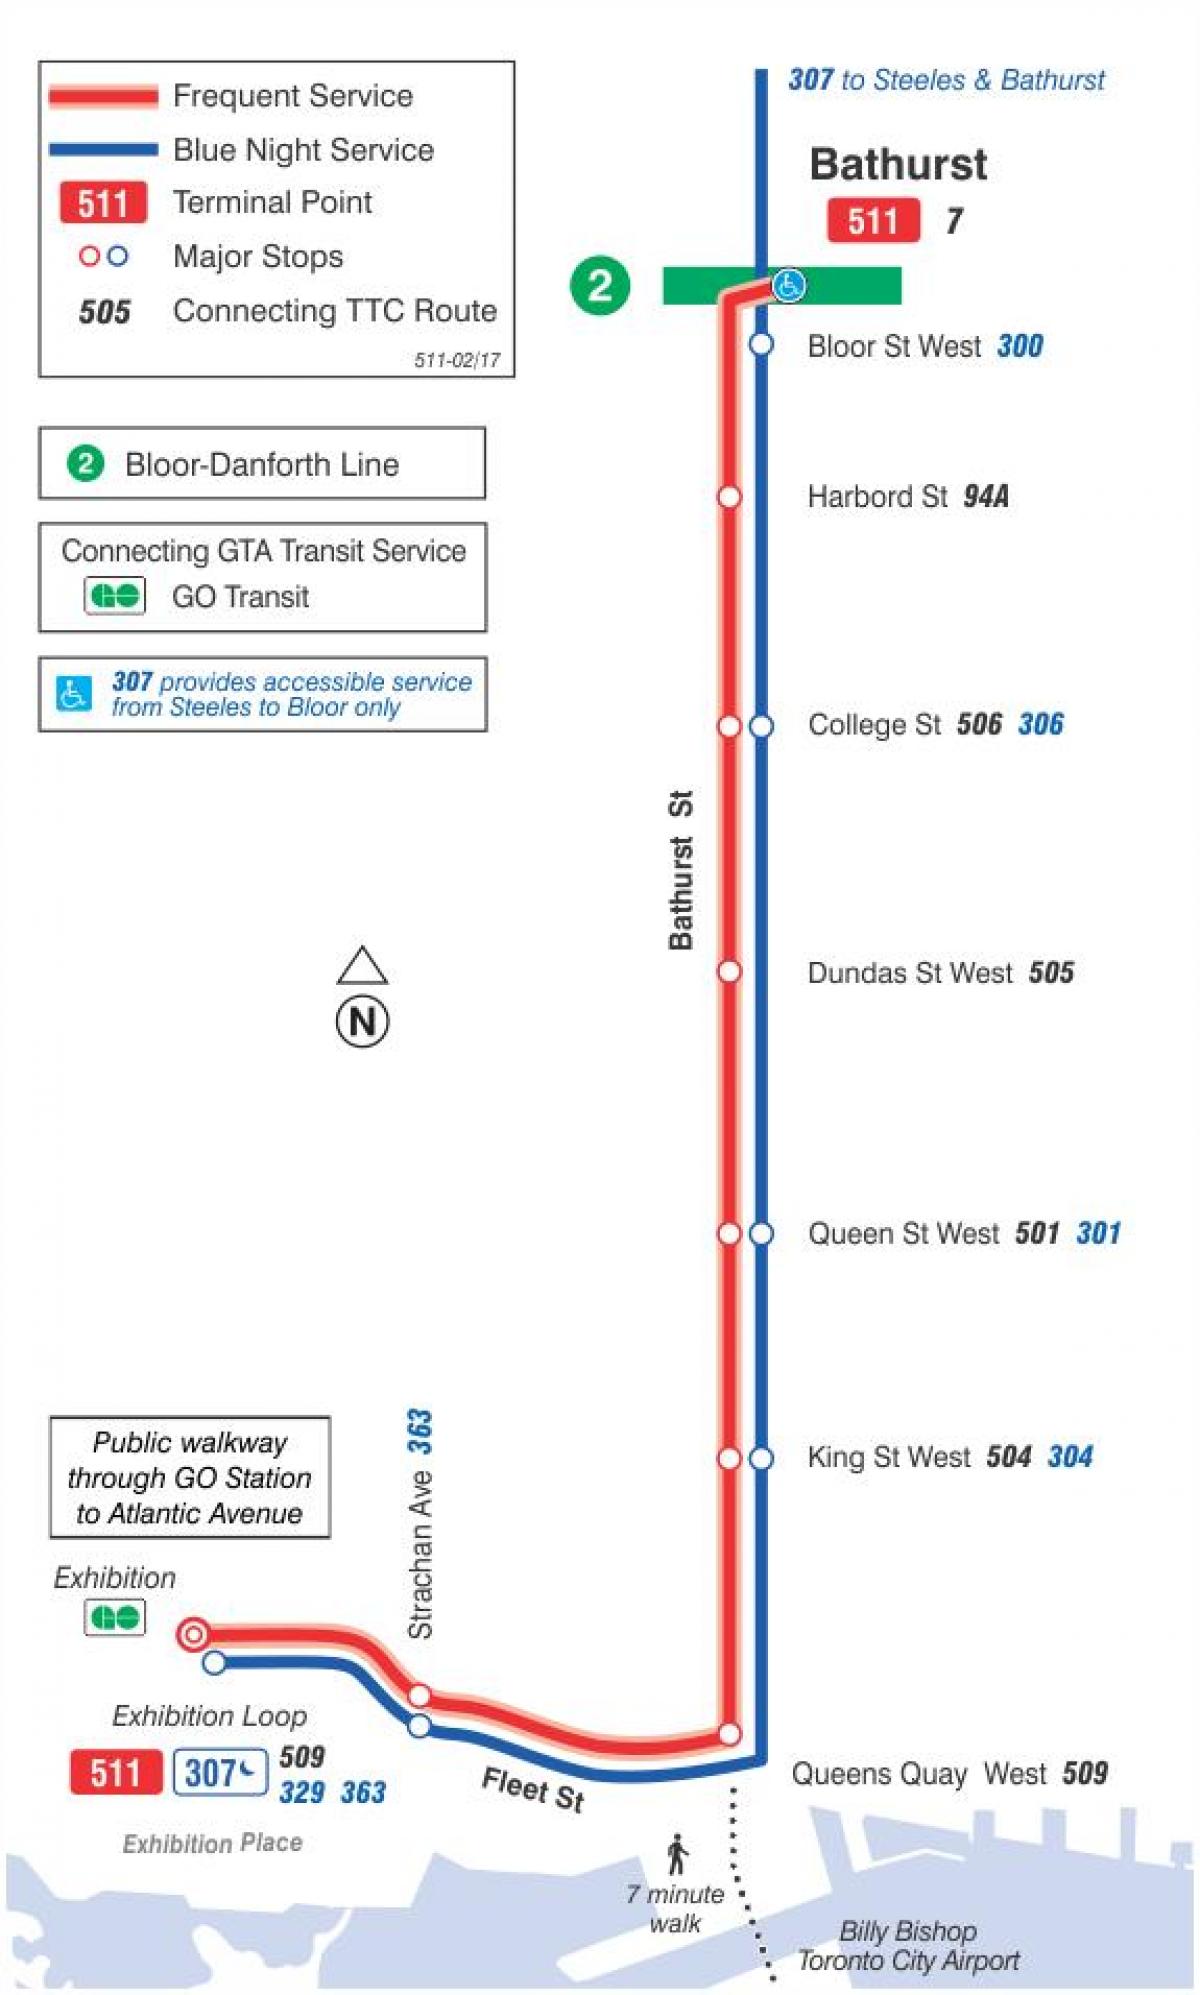 511 tramvay hattı haritası Bathurst